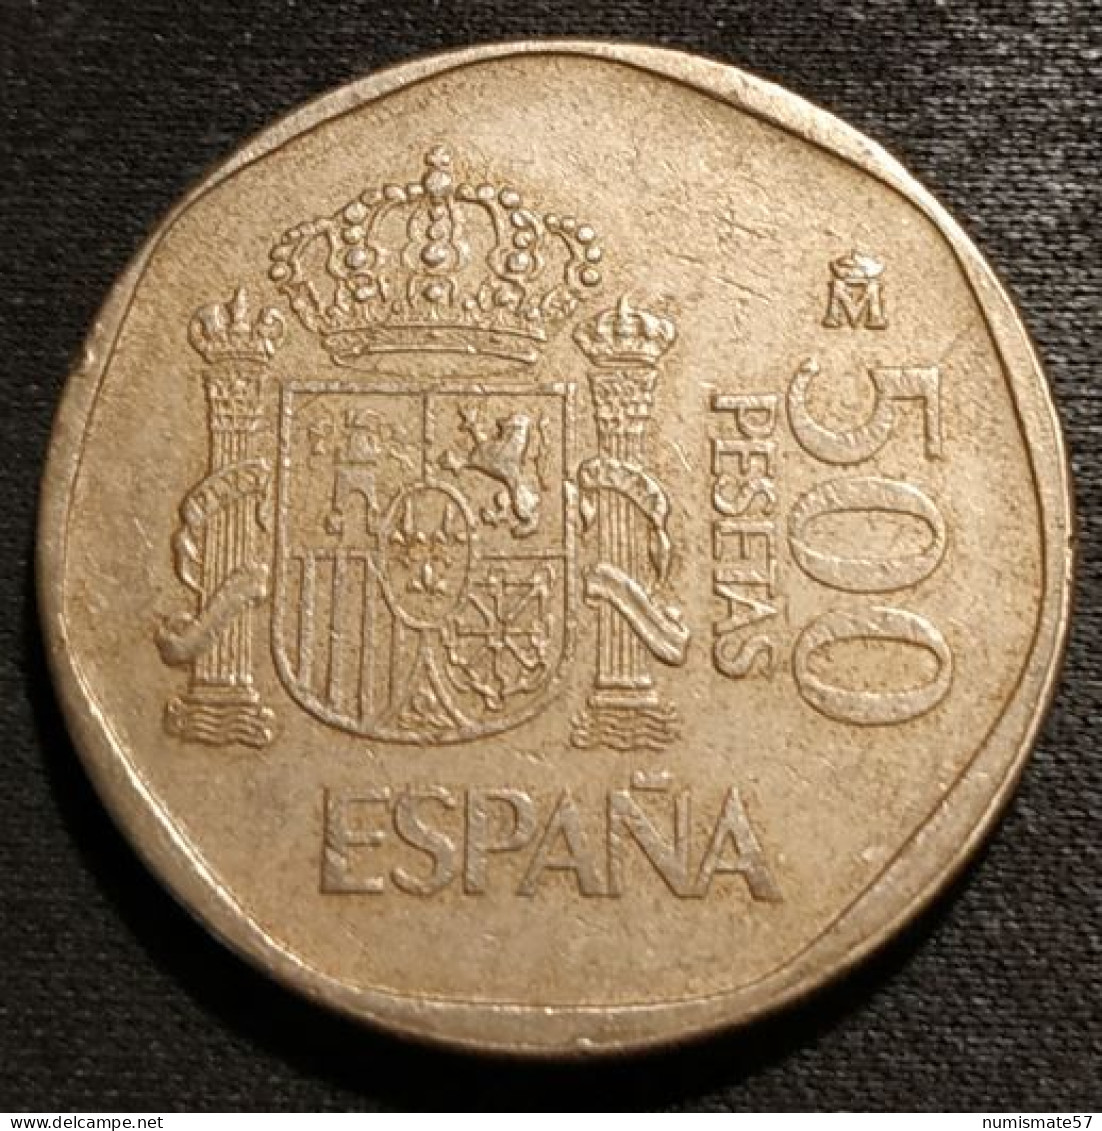 ESPAGNE - ESPANA - SPAIN - 500 PESETAS 1989 - Juan Carlos I - KM 831 - 500 Pesetas